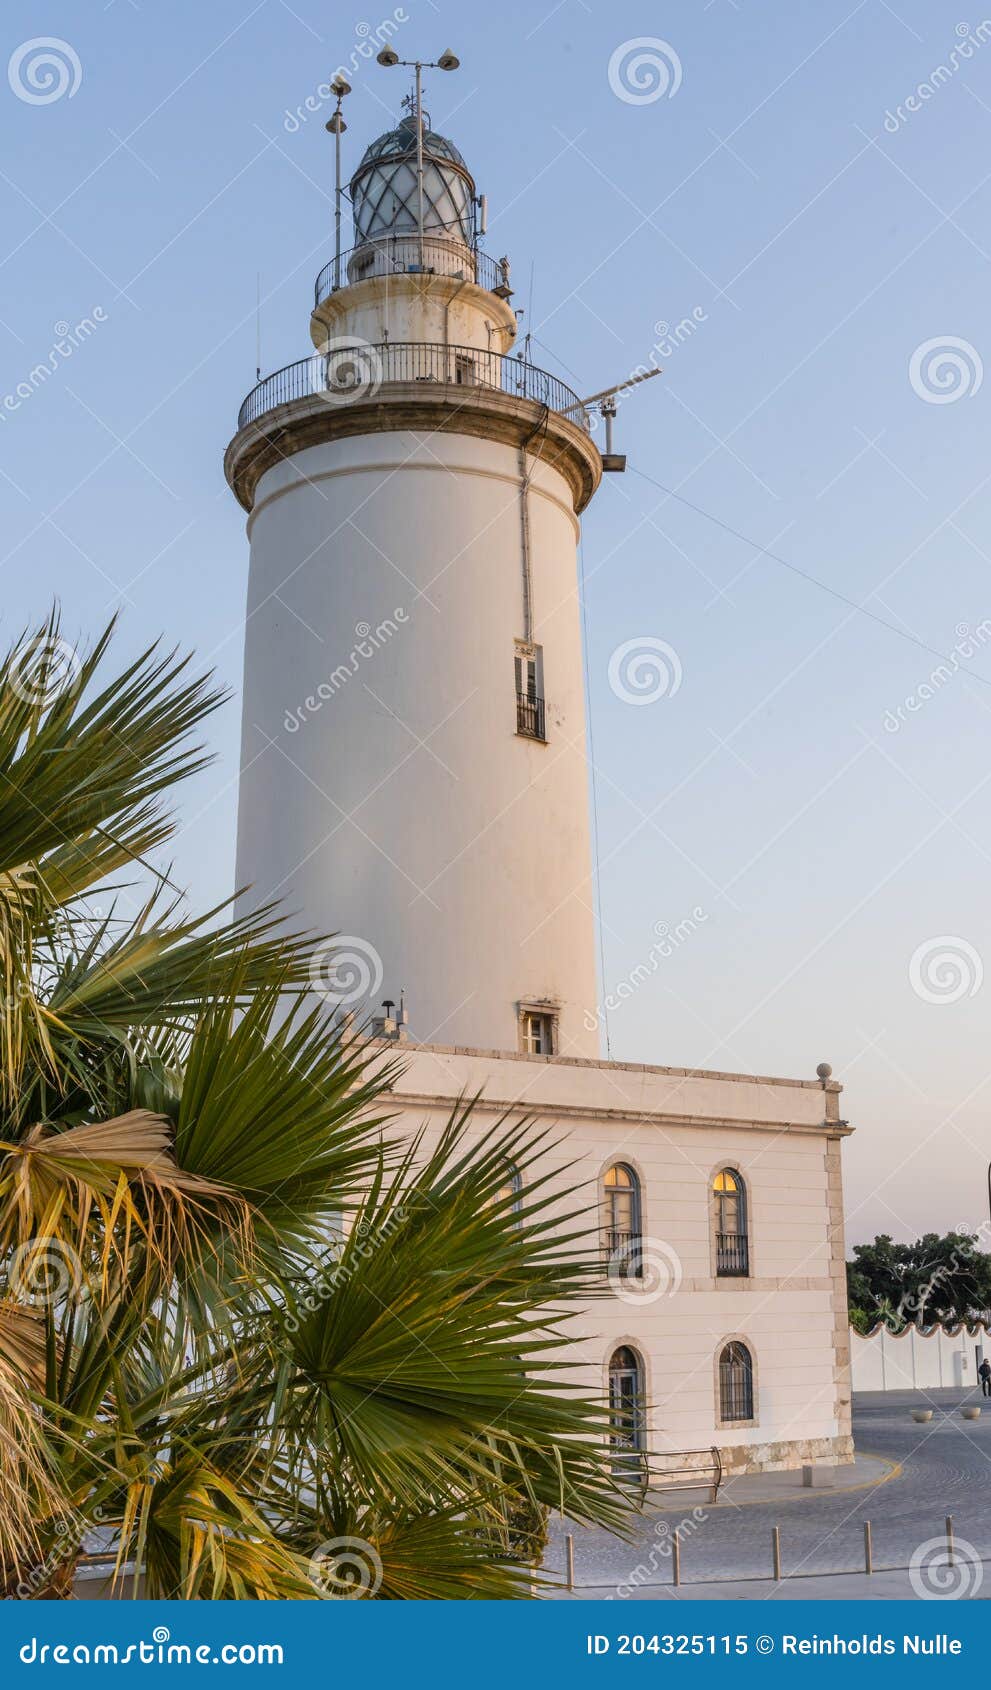 la farola de mÃÂ¡laga lighthouse on sunny summer evening